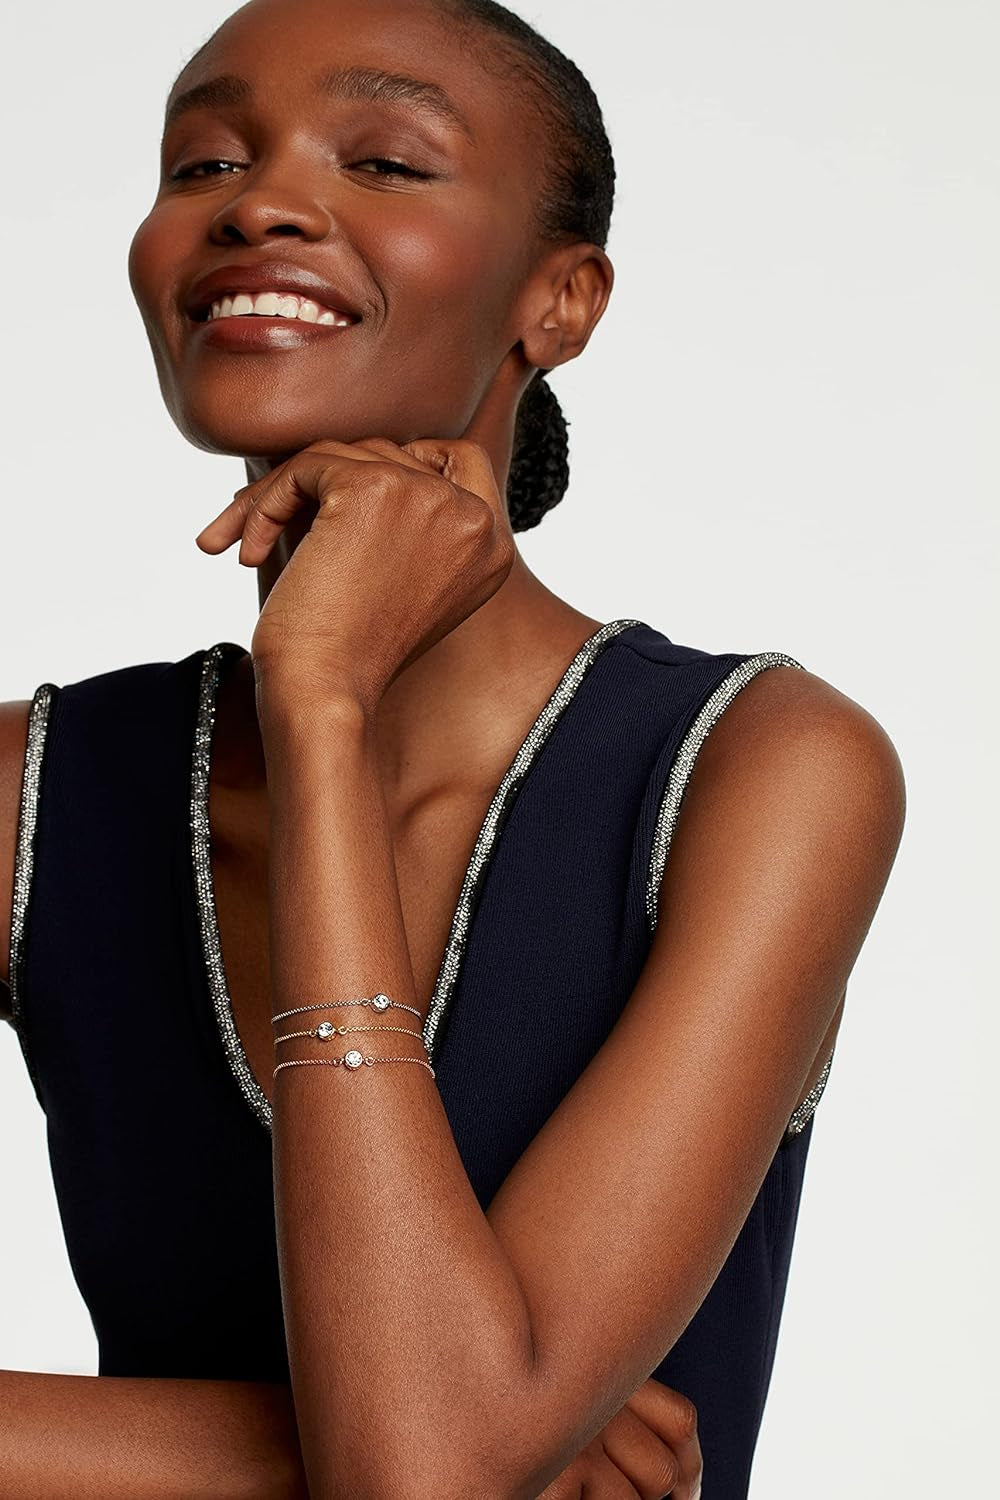 Sarsa Crystal Drawstring Adjustable Bracelet for Women